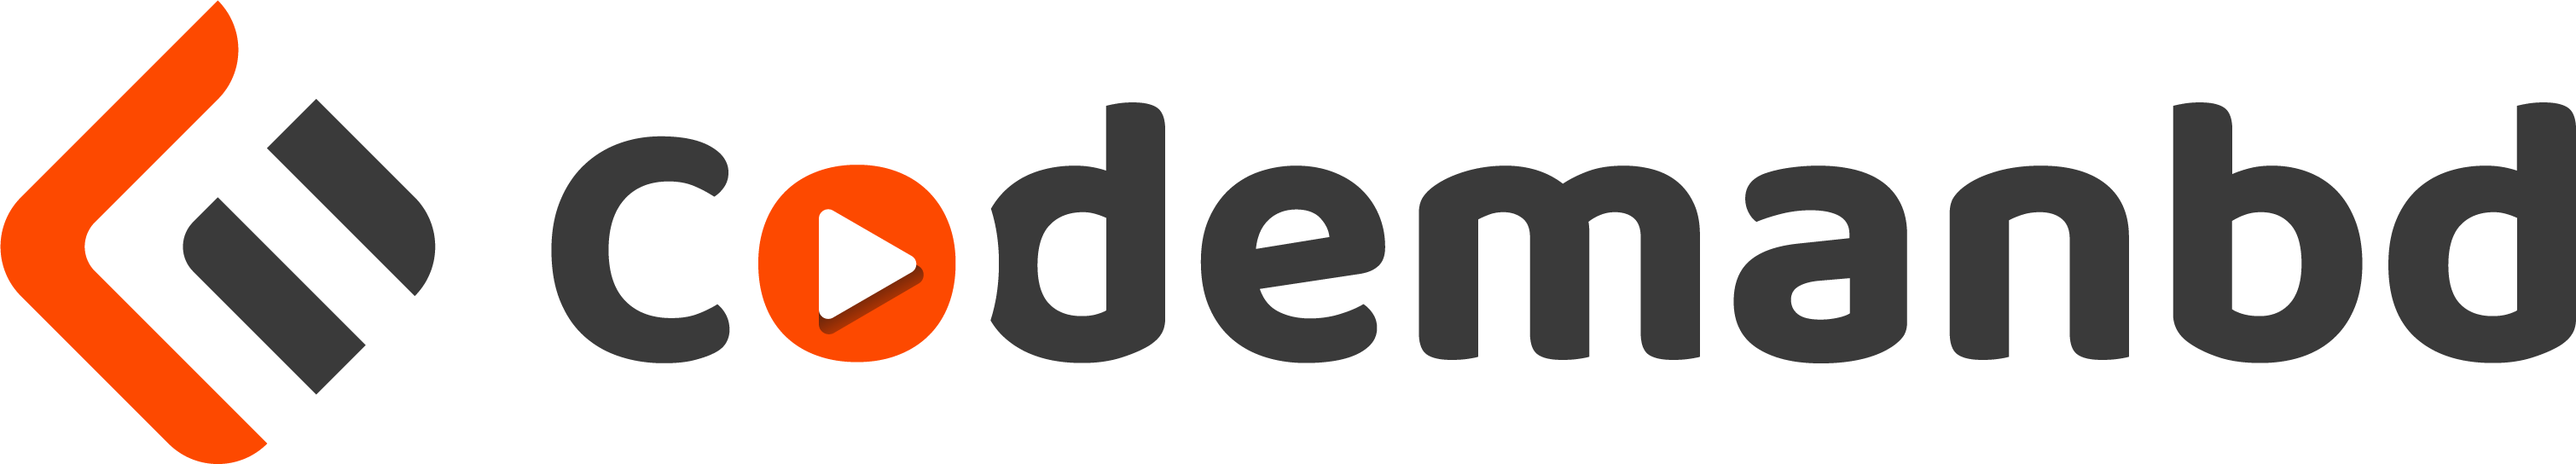 Codemanbd logo png file